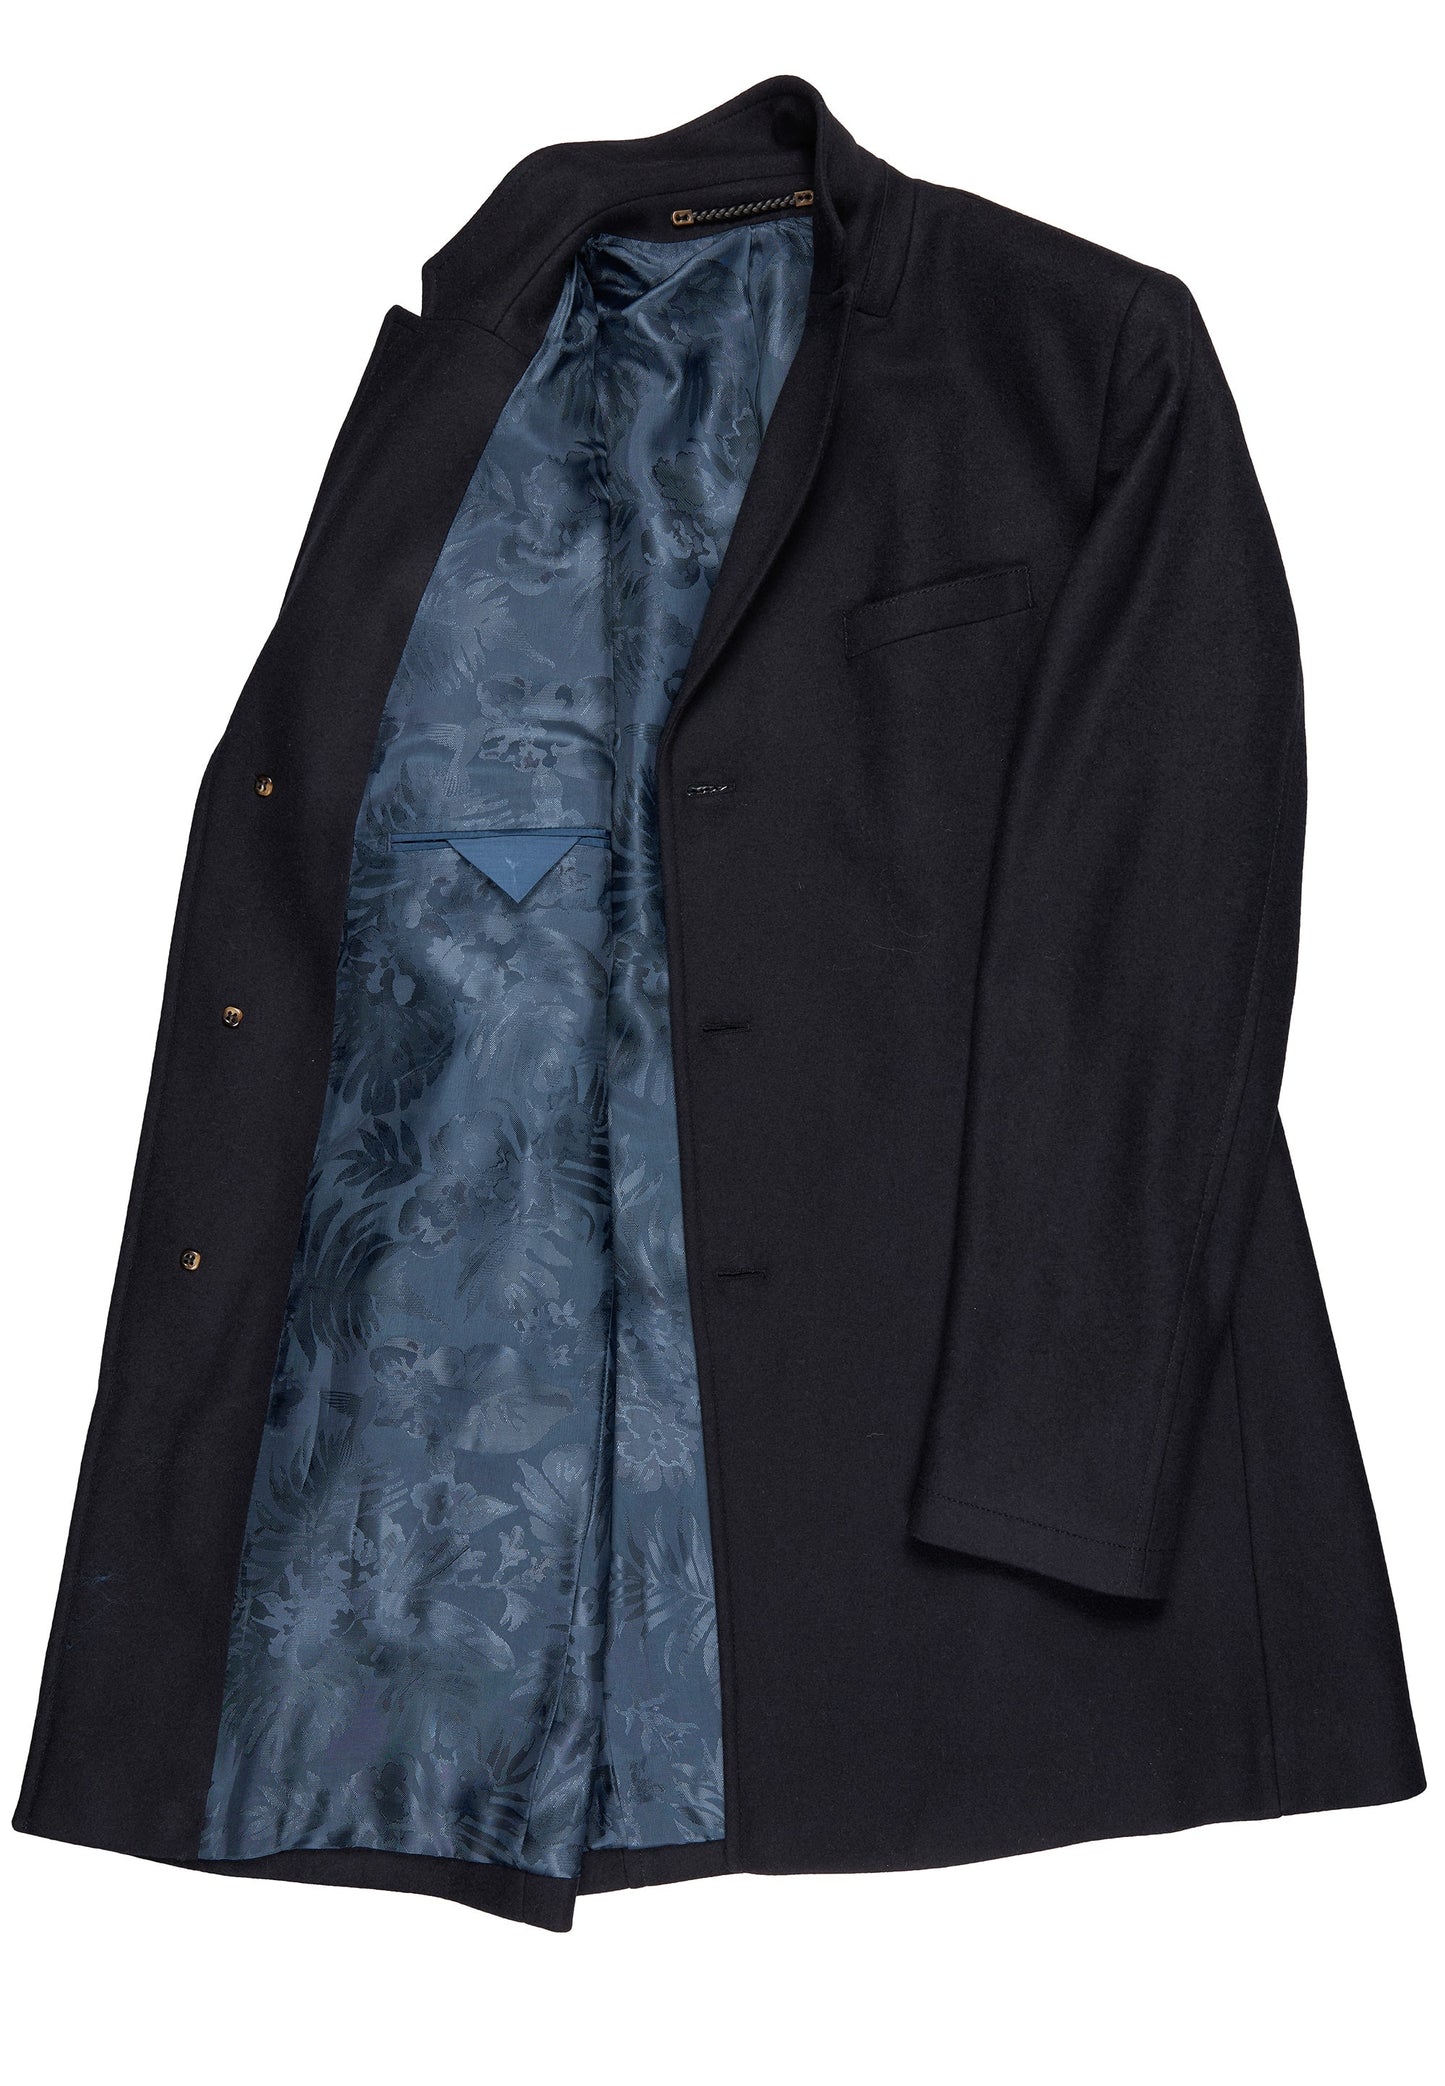 CARL GROSS Wool & Cashmere Blend Coat, Navy